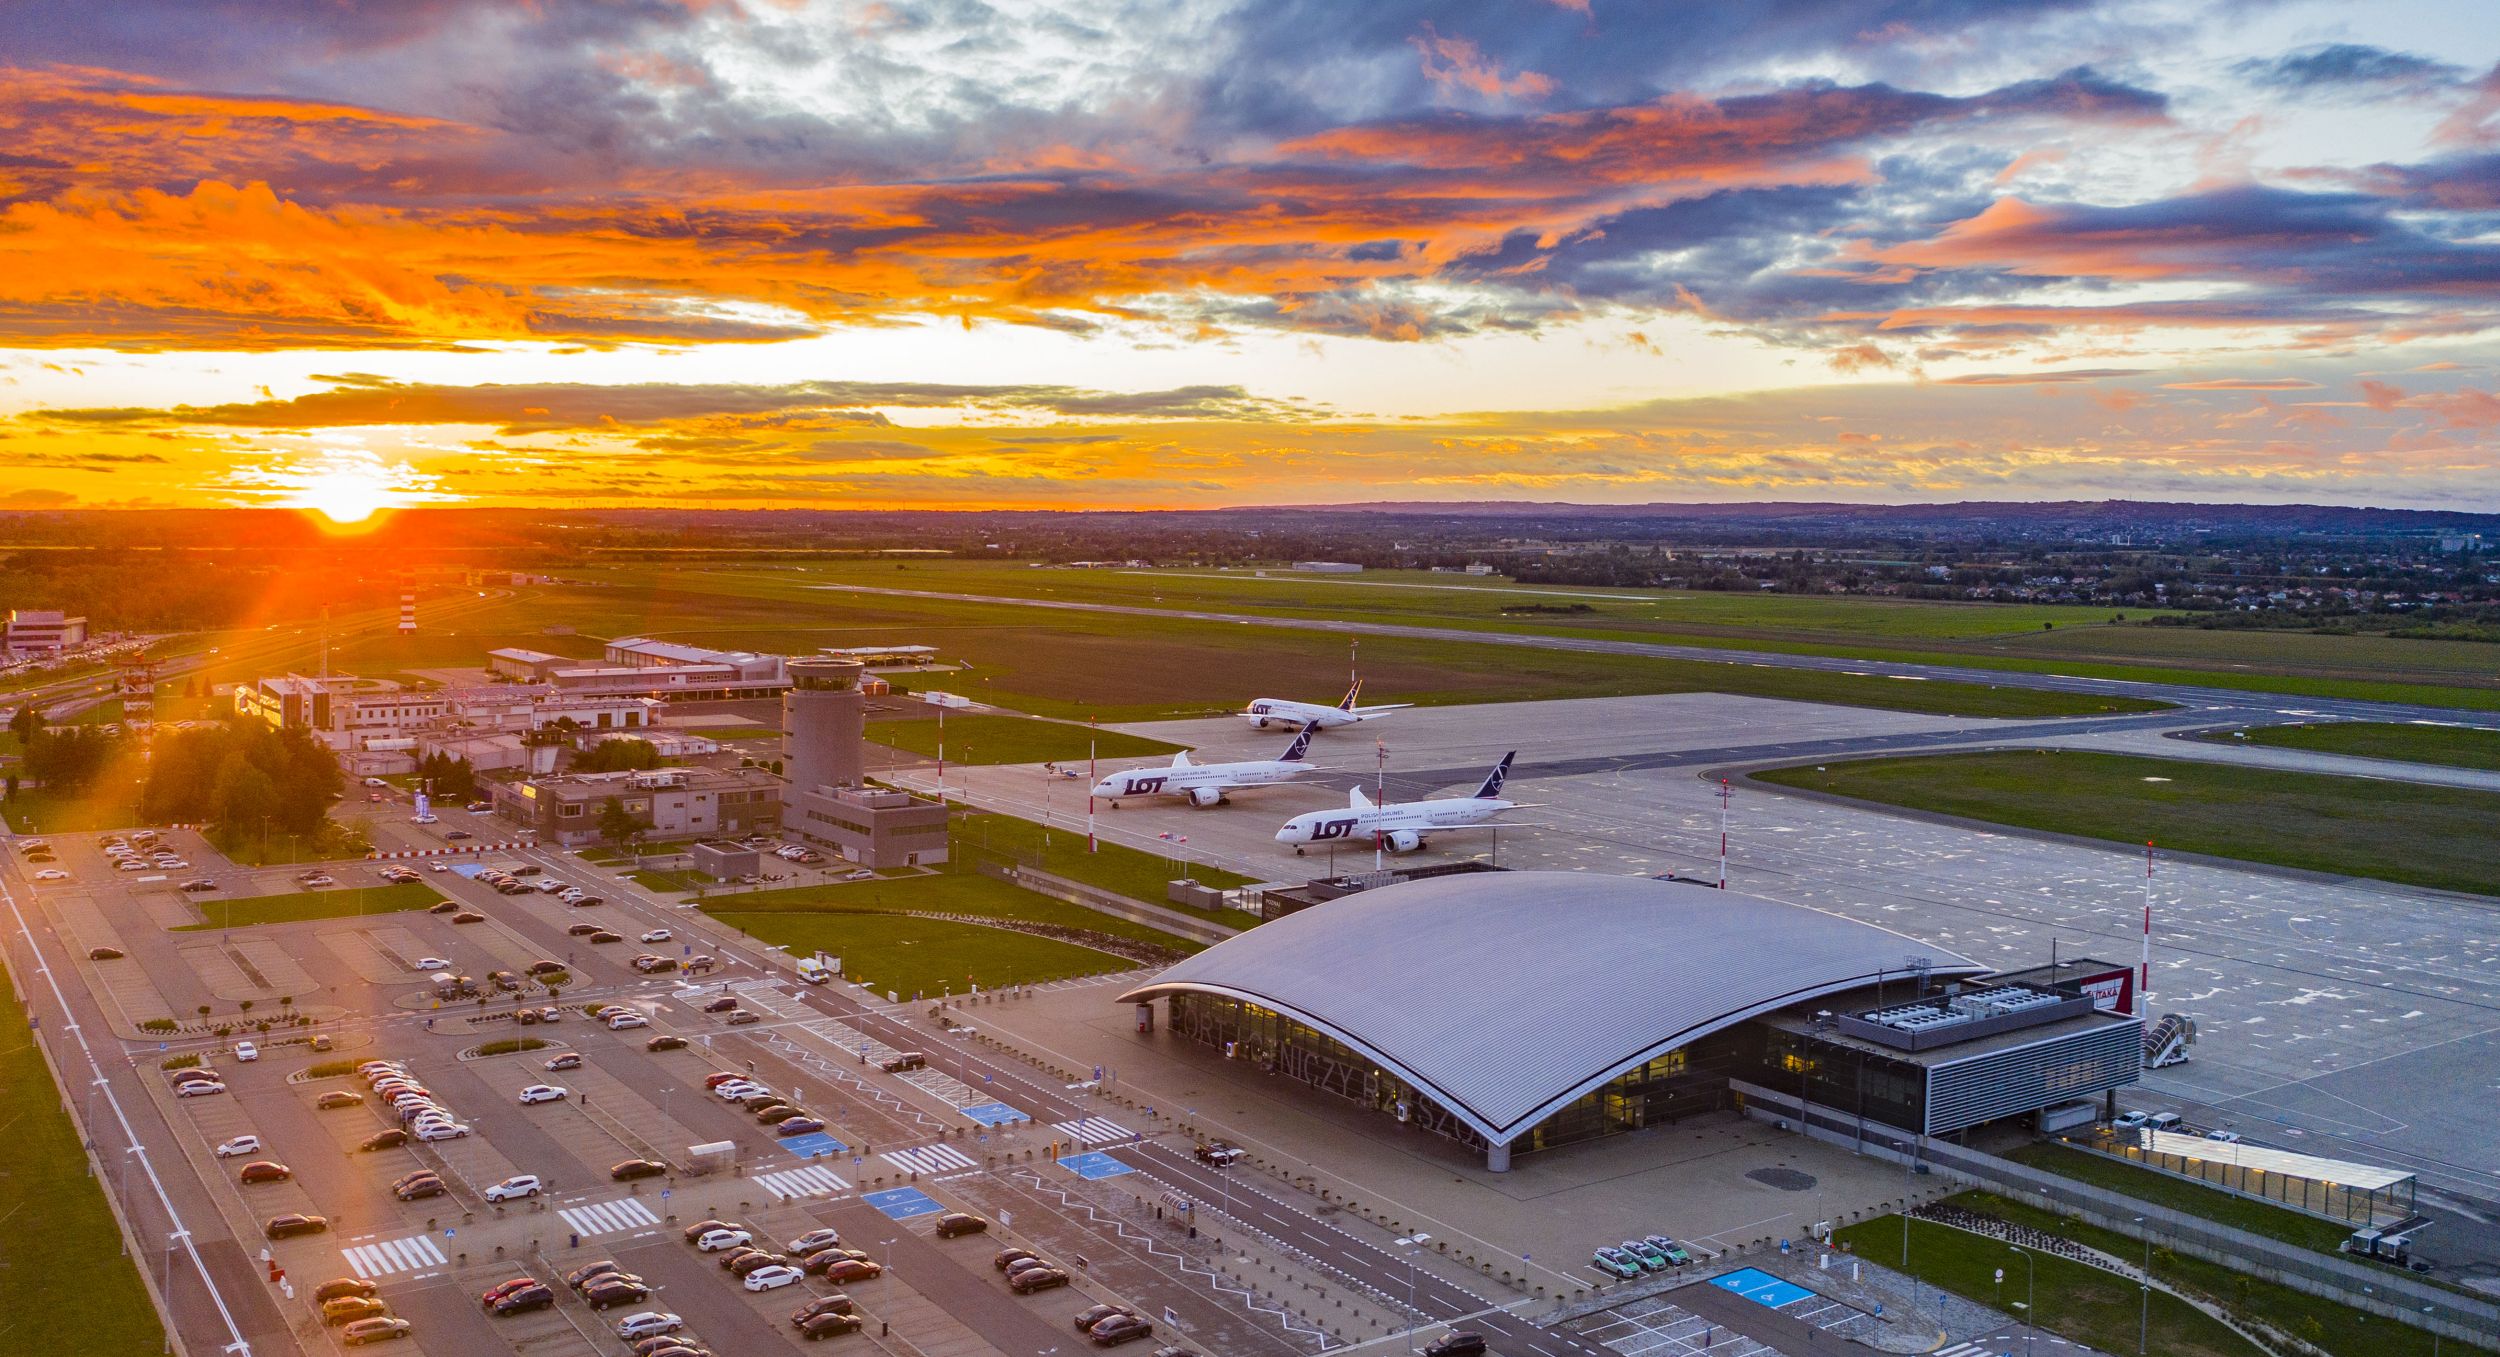 Zdjęcie z lotu ptaka. Na dole Lotnisko: terminal oraz samoloty na płycie lotniczej. W tle Pomarańczowy zachód słońca